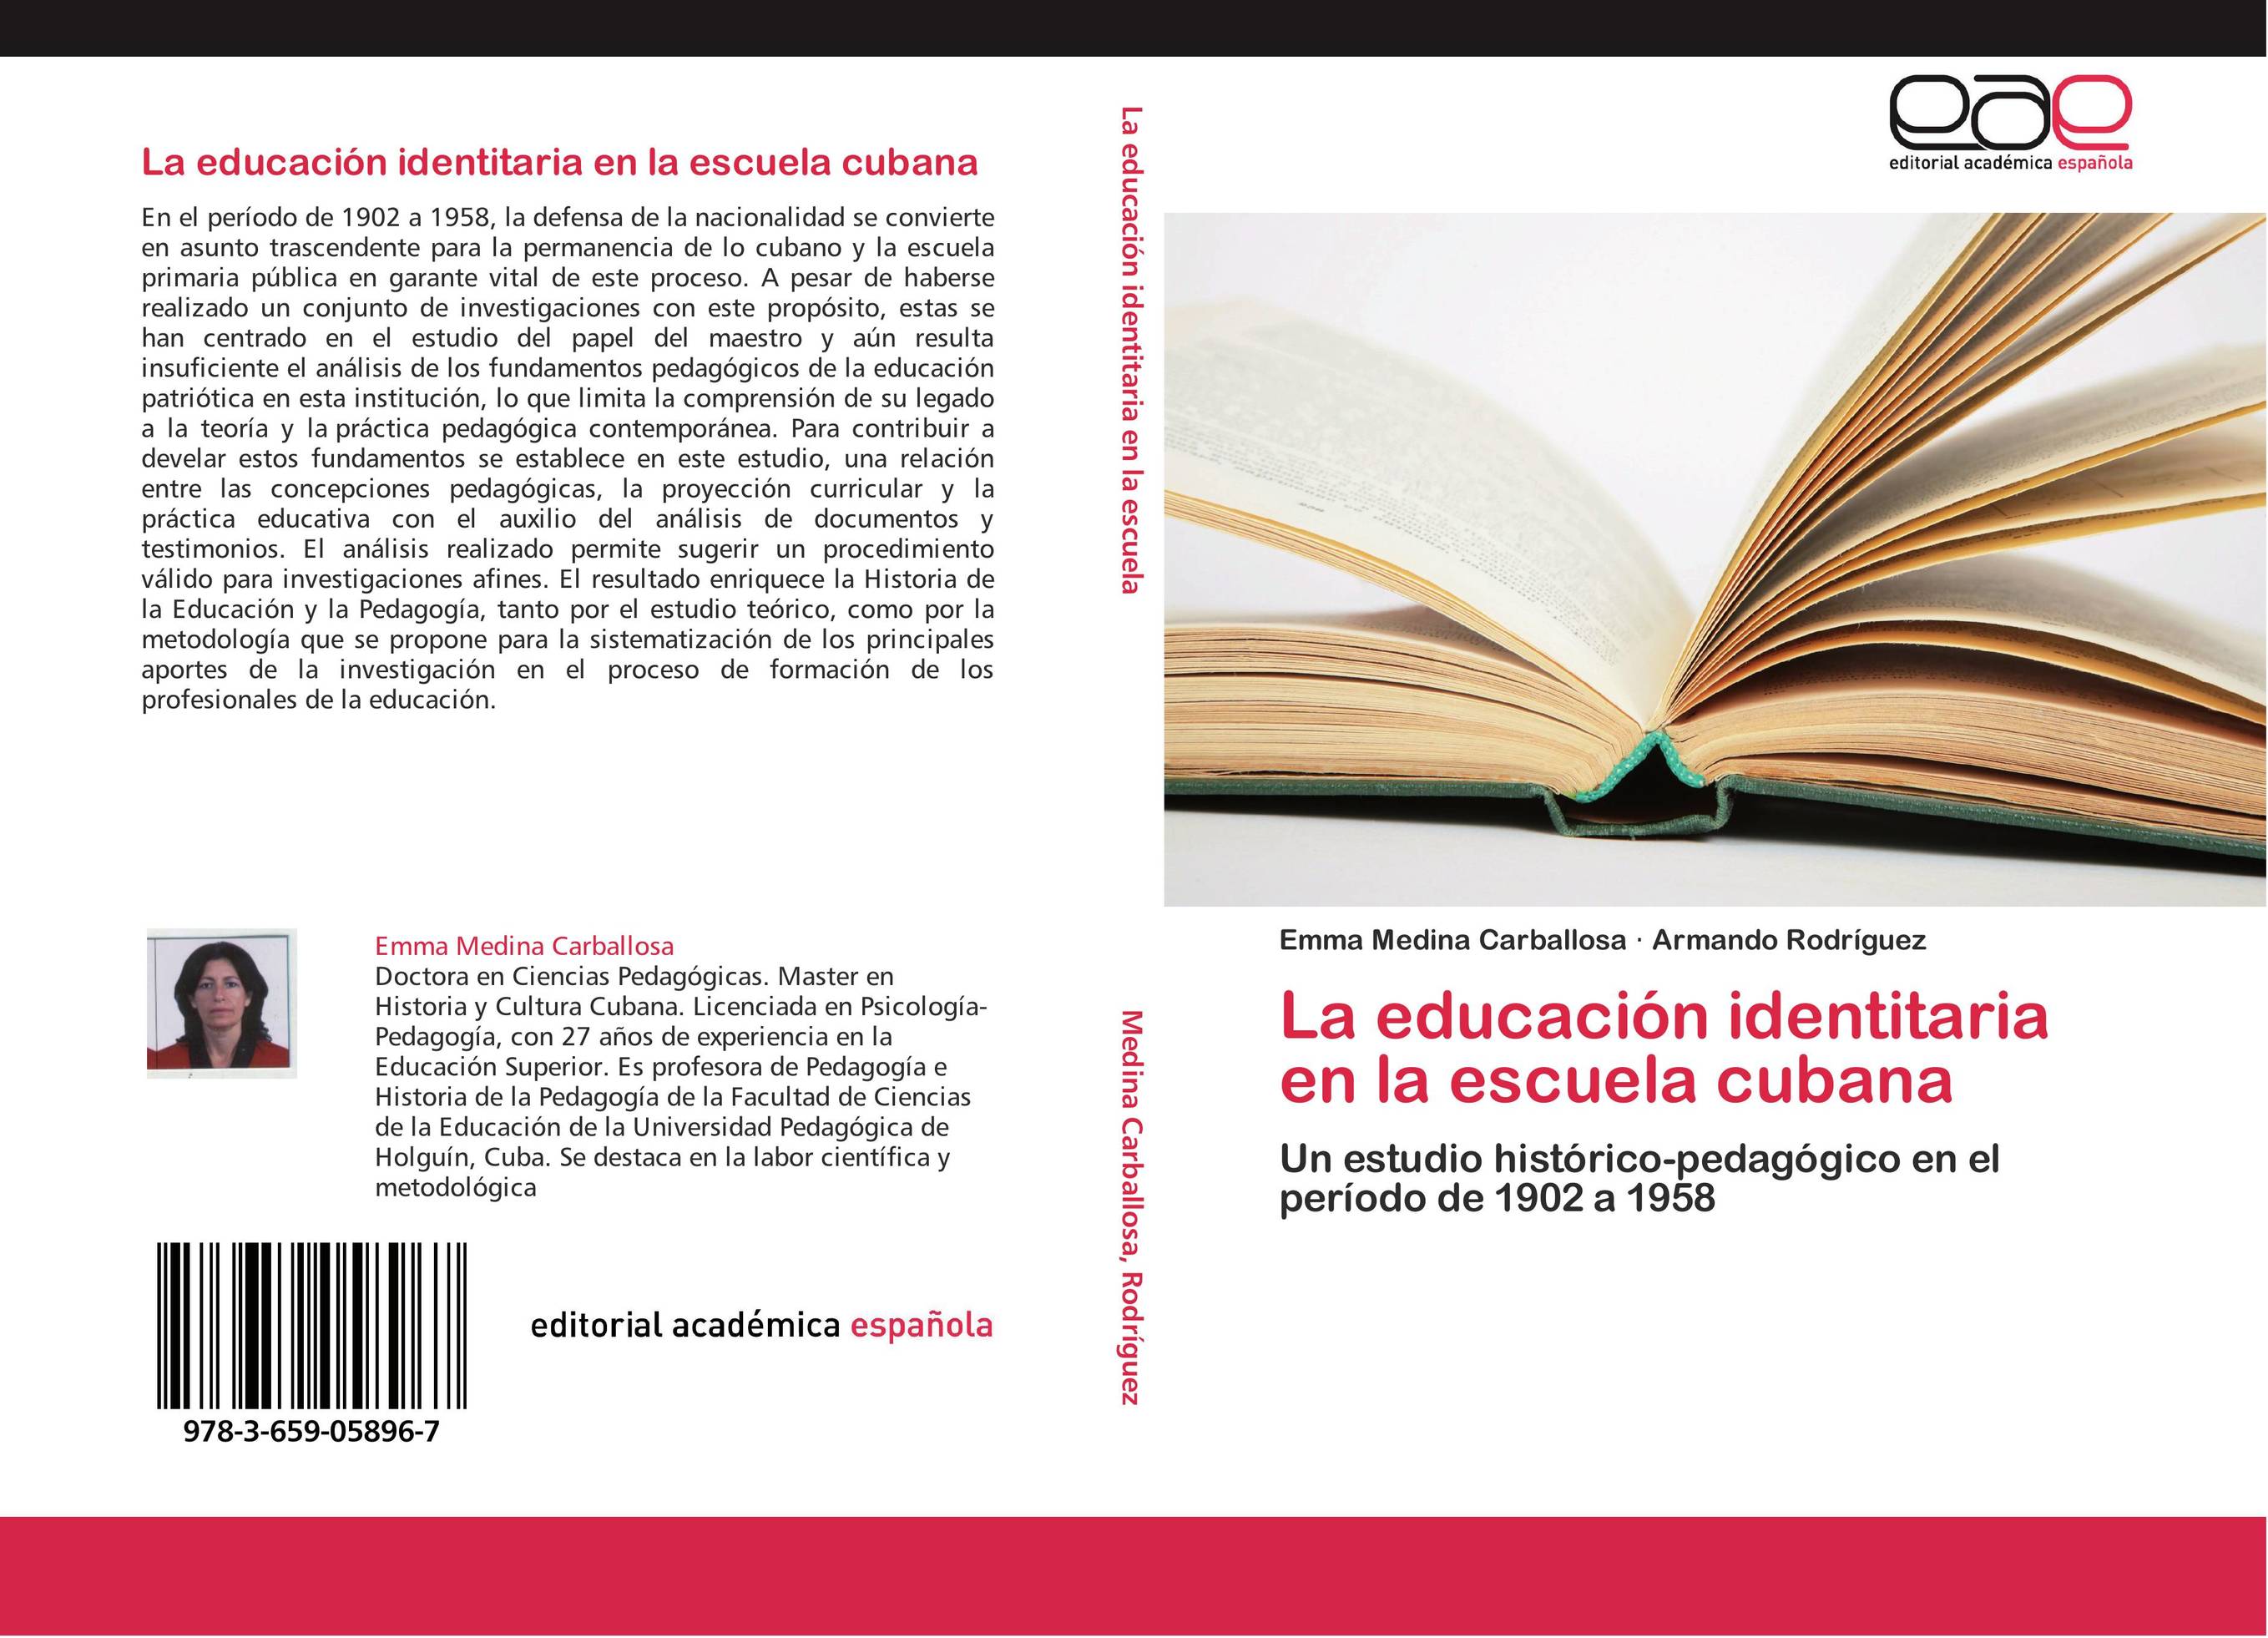 La educación identitaria en la escuela cubana